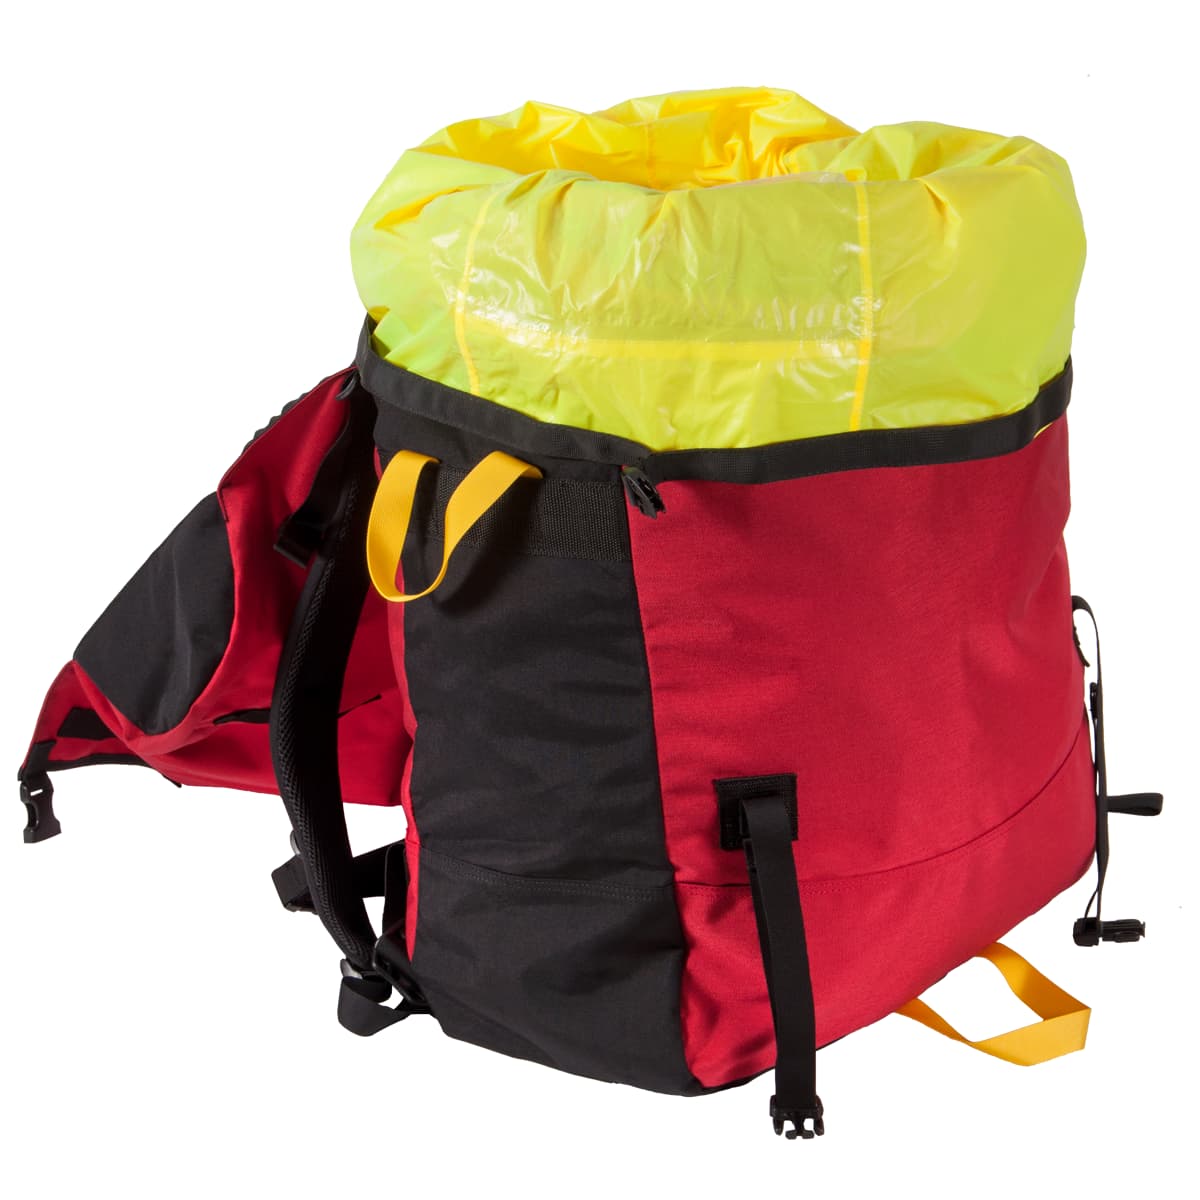 RBW Waterproof Canoe Pack / Backpack Liner